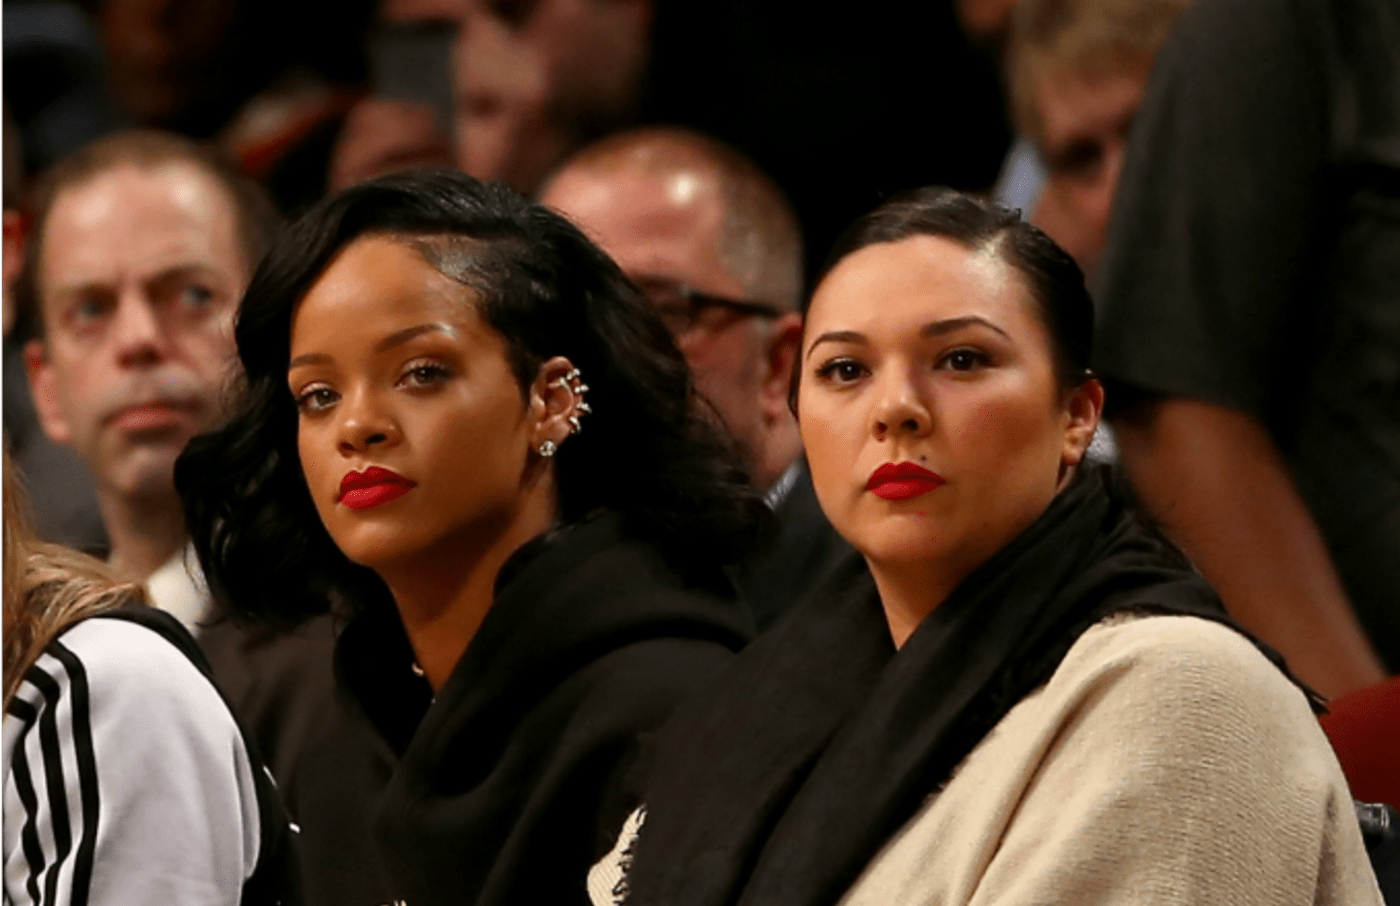 Rihanna and Jennifer Rosales attend NBA game